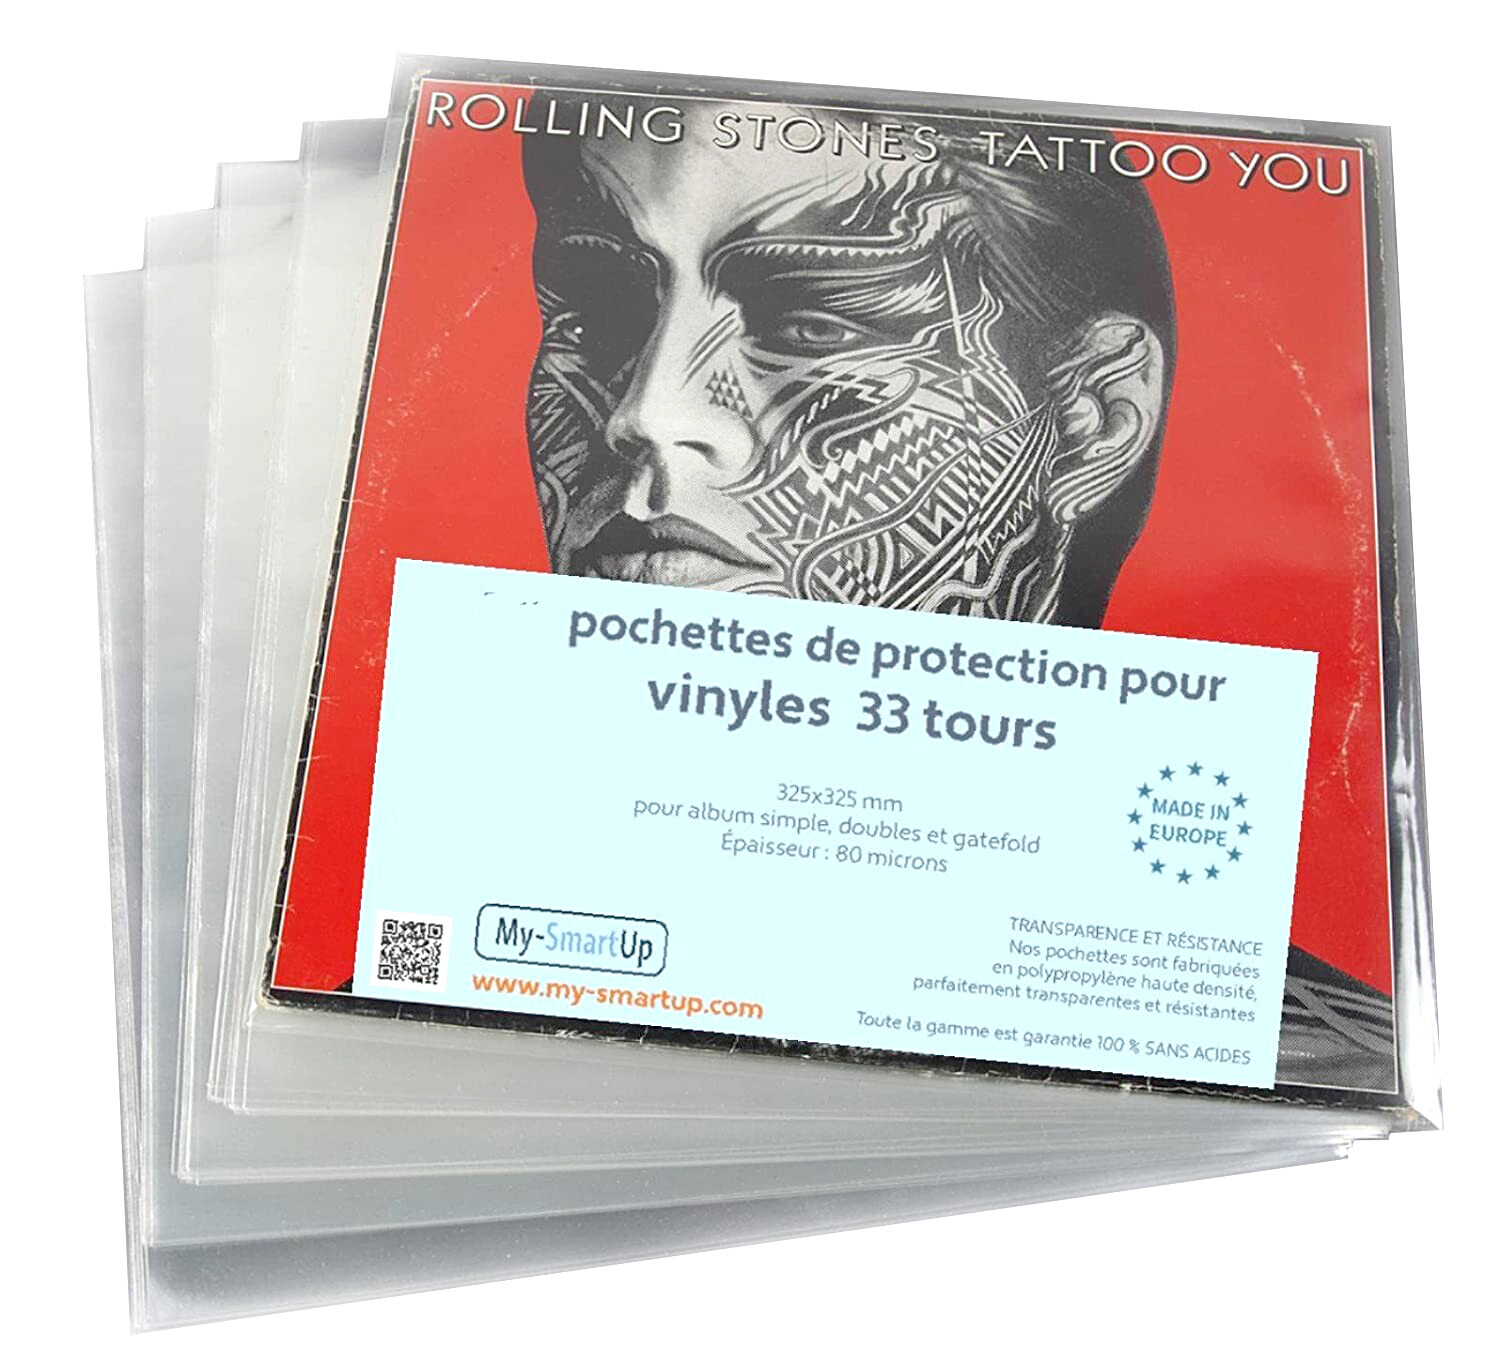 PEV 25 33T Protection Pochette Vinyle 33T (lot de 25) : Feutrines et  Accessoires Vinyle Enova Hifi - Univers Sons